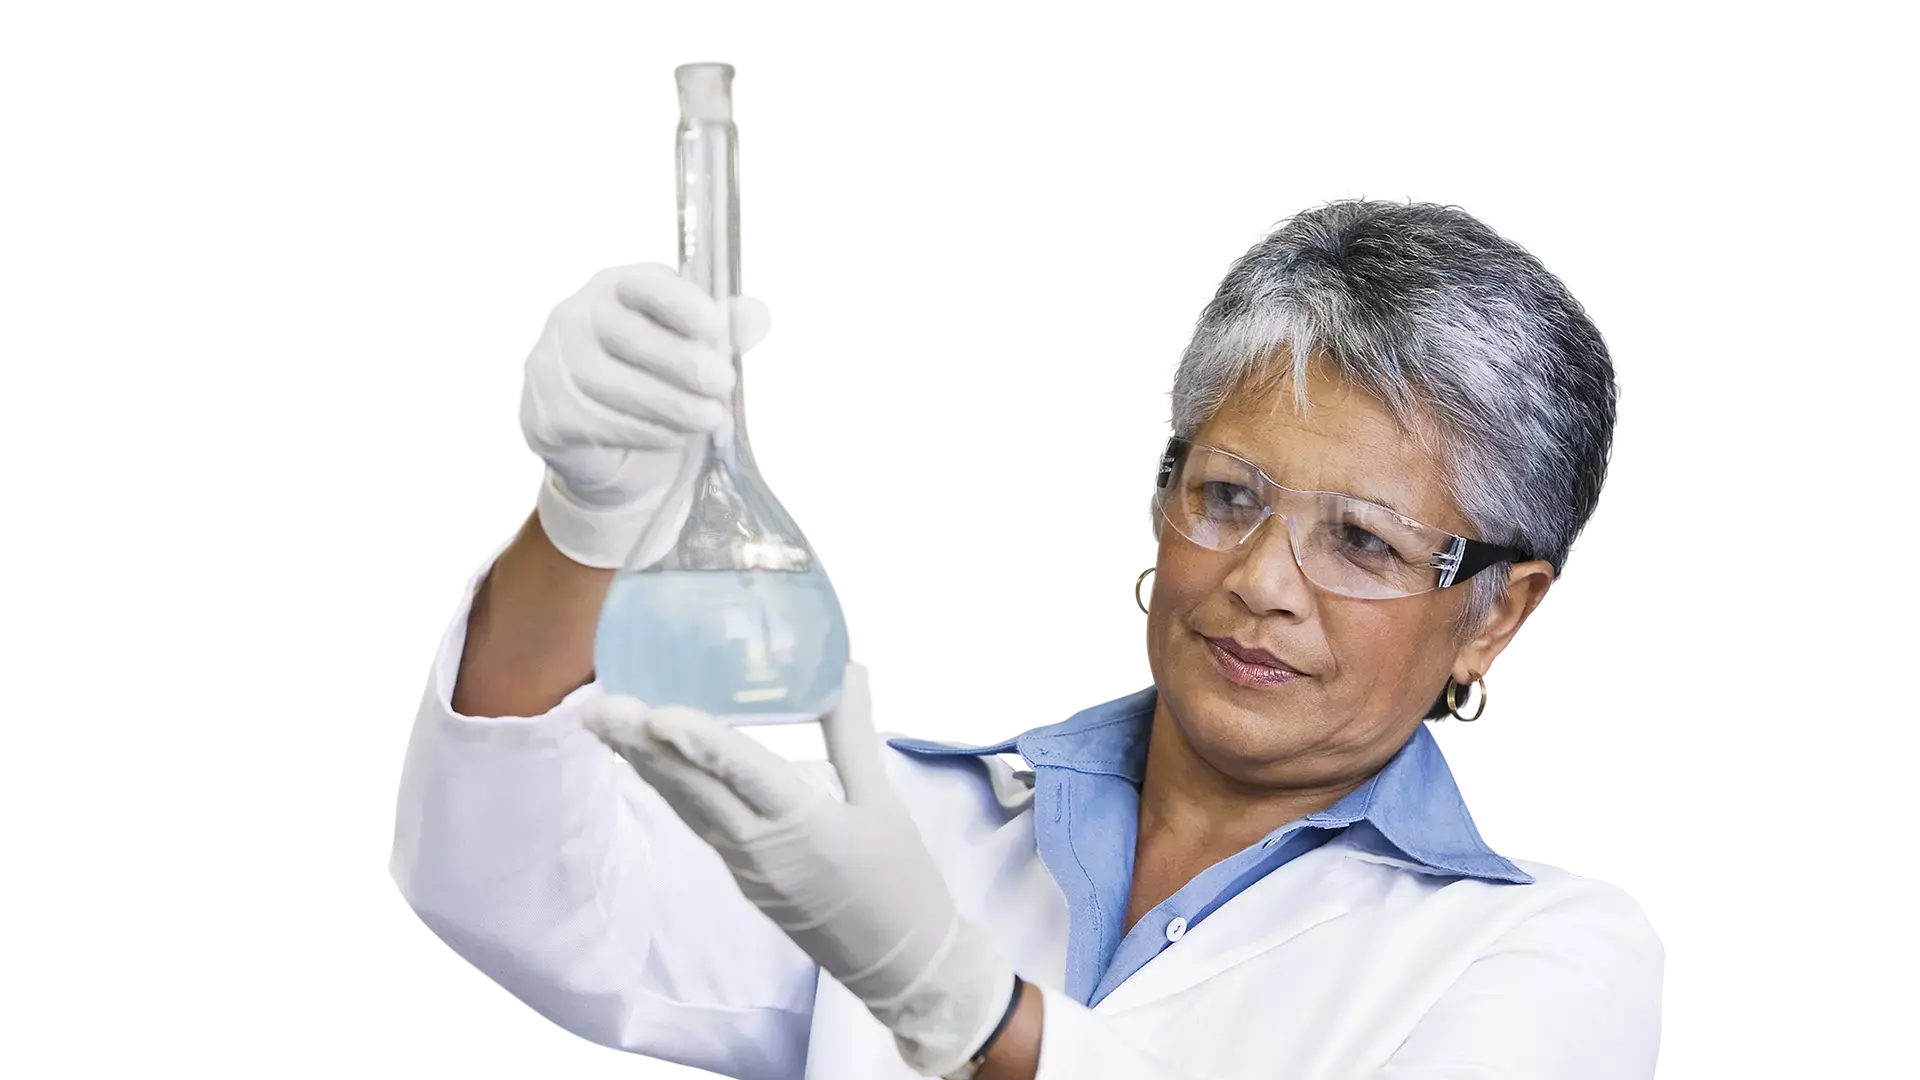 Científico observando un vaso de precipitados con productos químicos